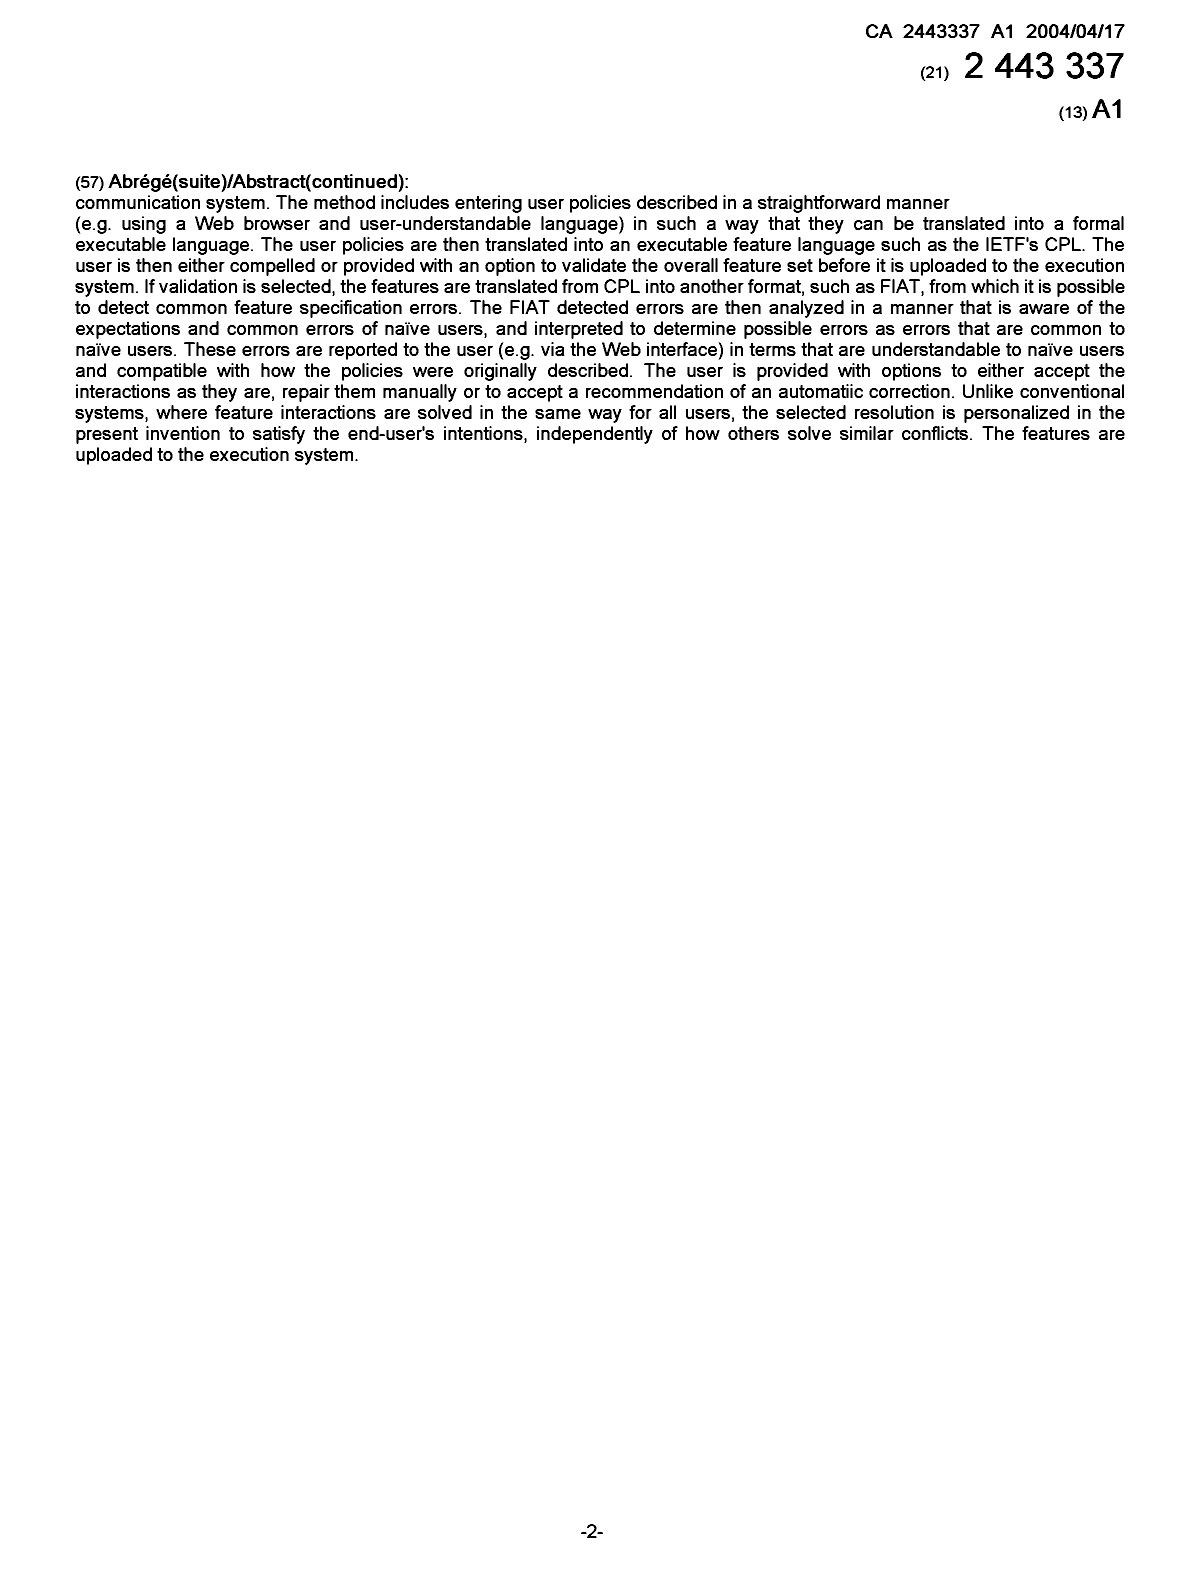 Document de brevet canadien 2443337. Page couverture 20040322. Image 2 de 2